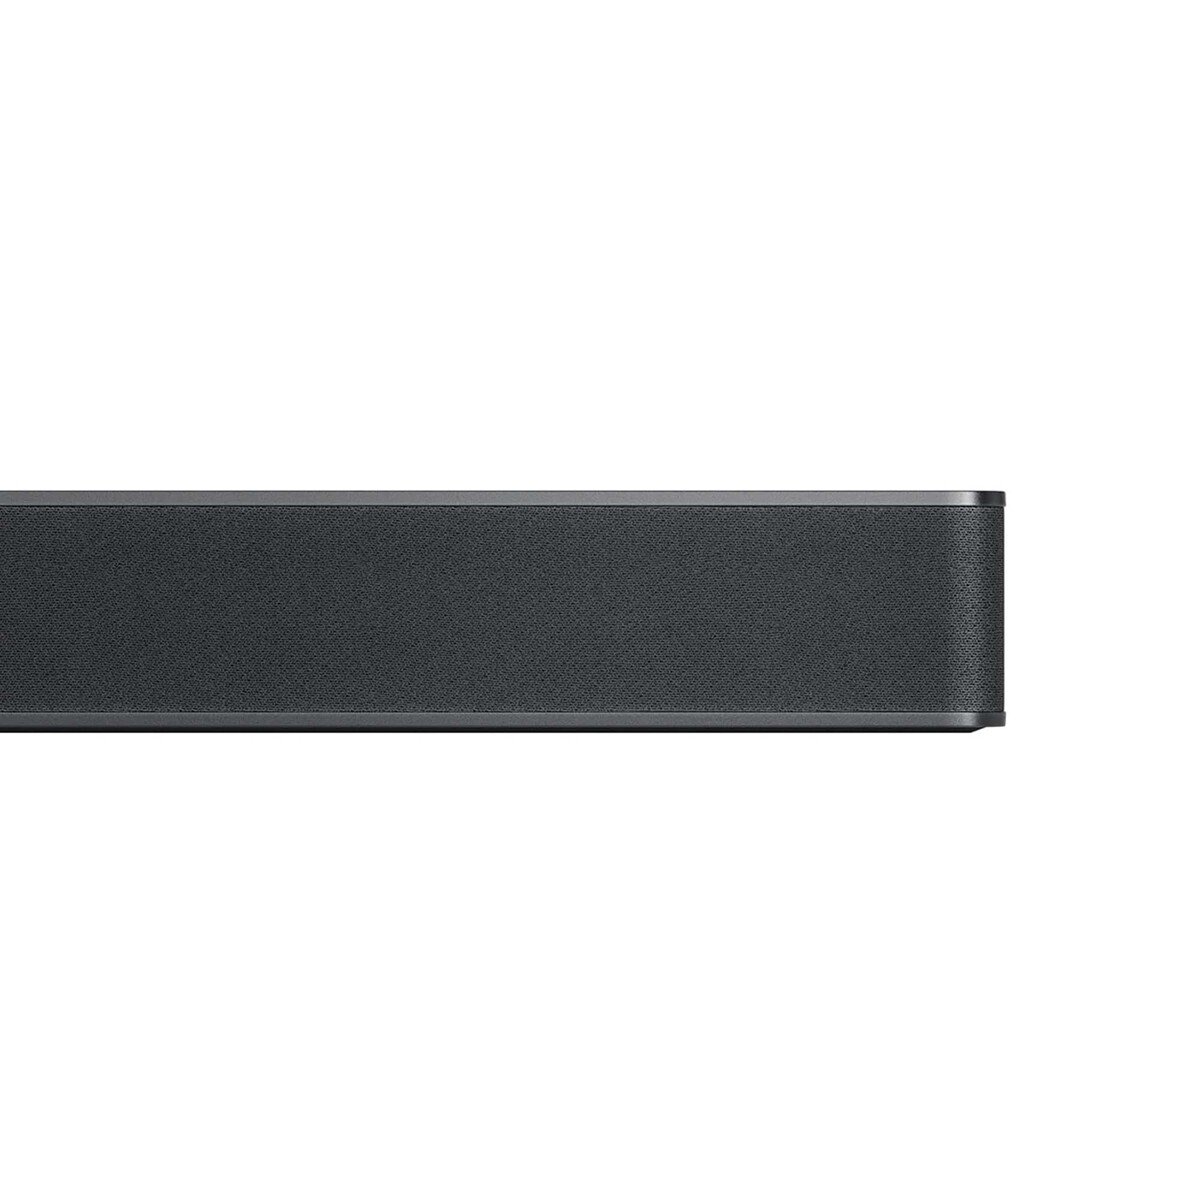 إل جي مكبر صوت 5.1.3 قناة مع دولبي أتموس ، 620 واط ، أسود ، S80QR